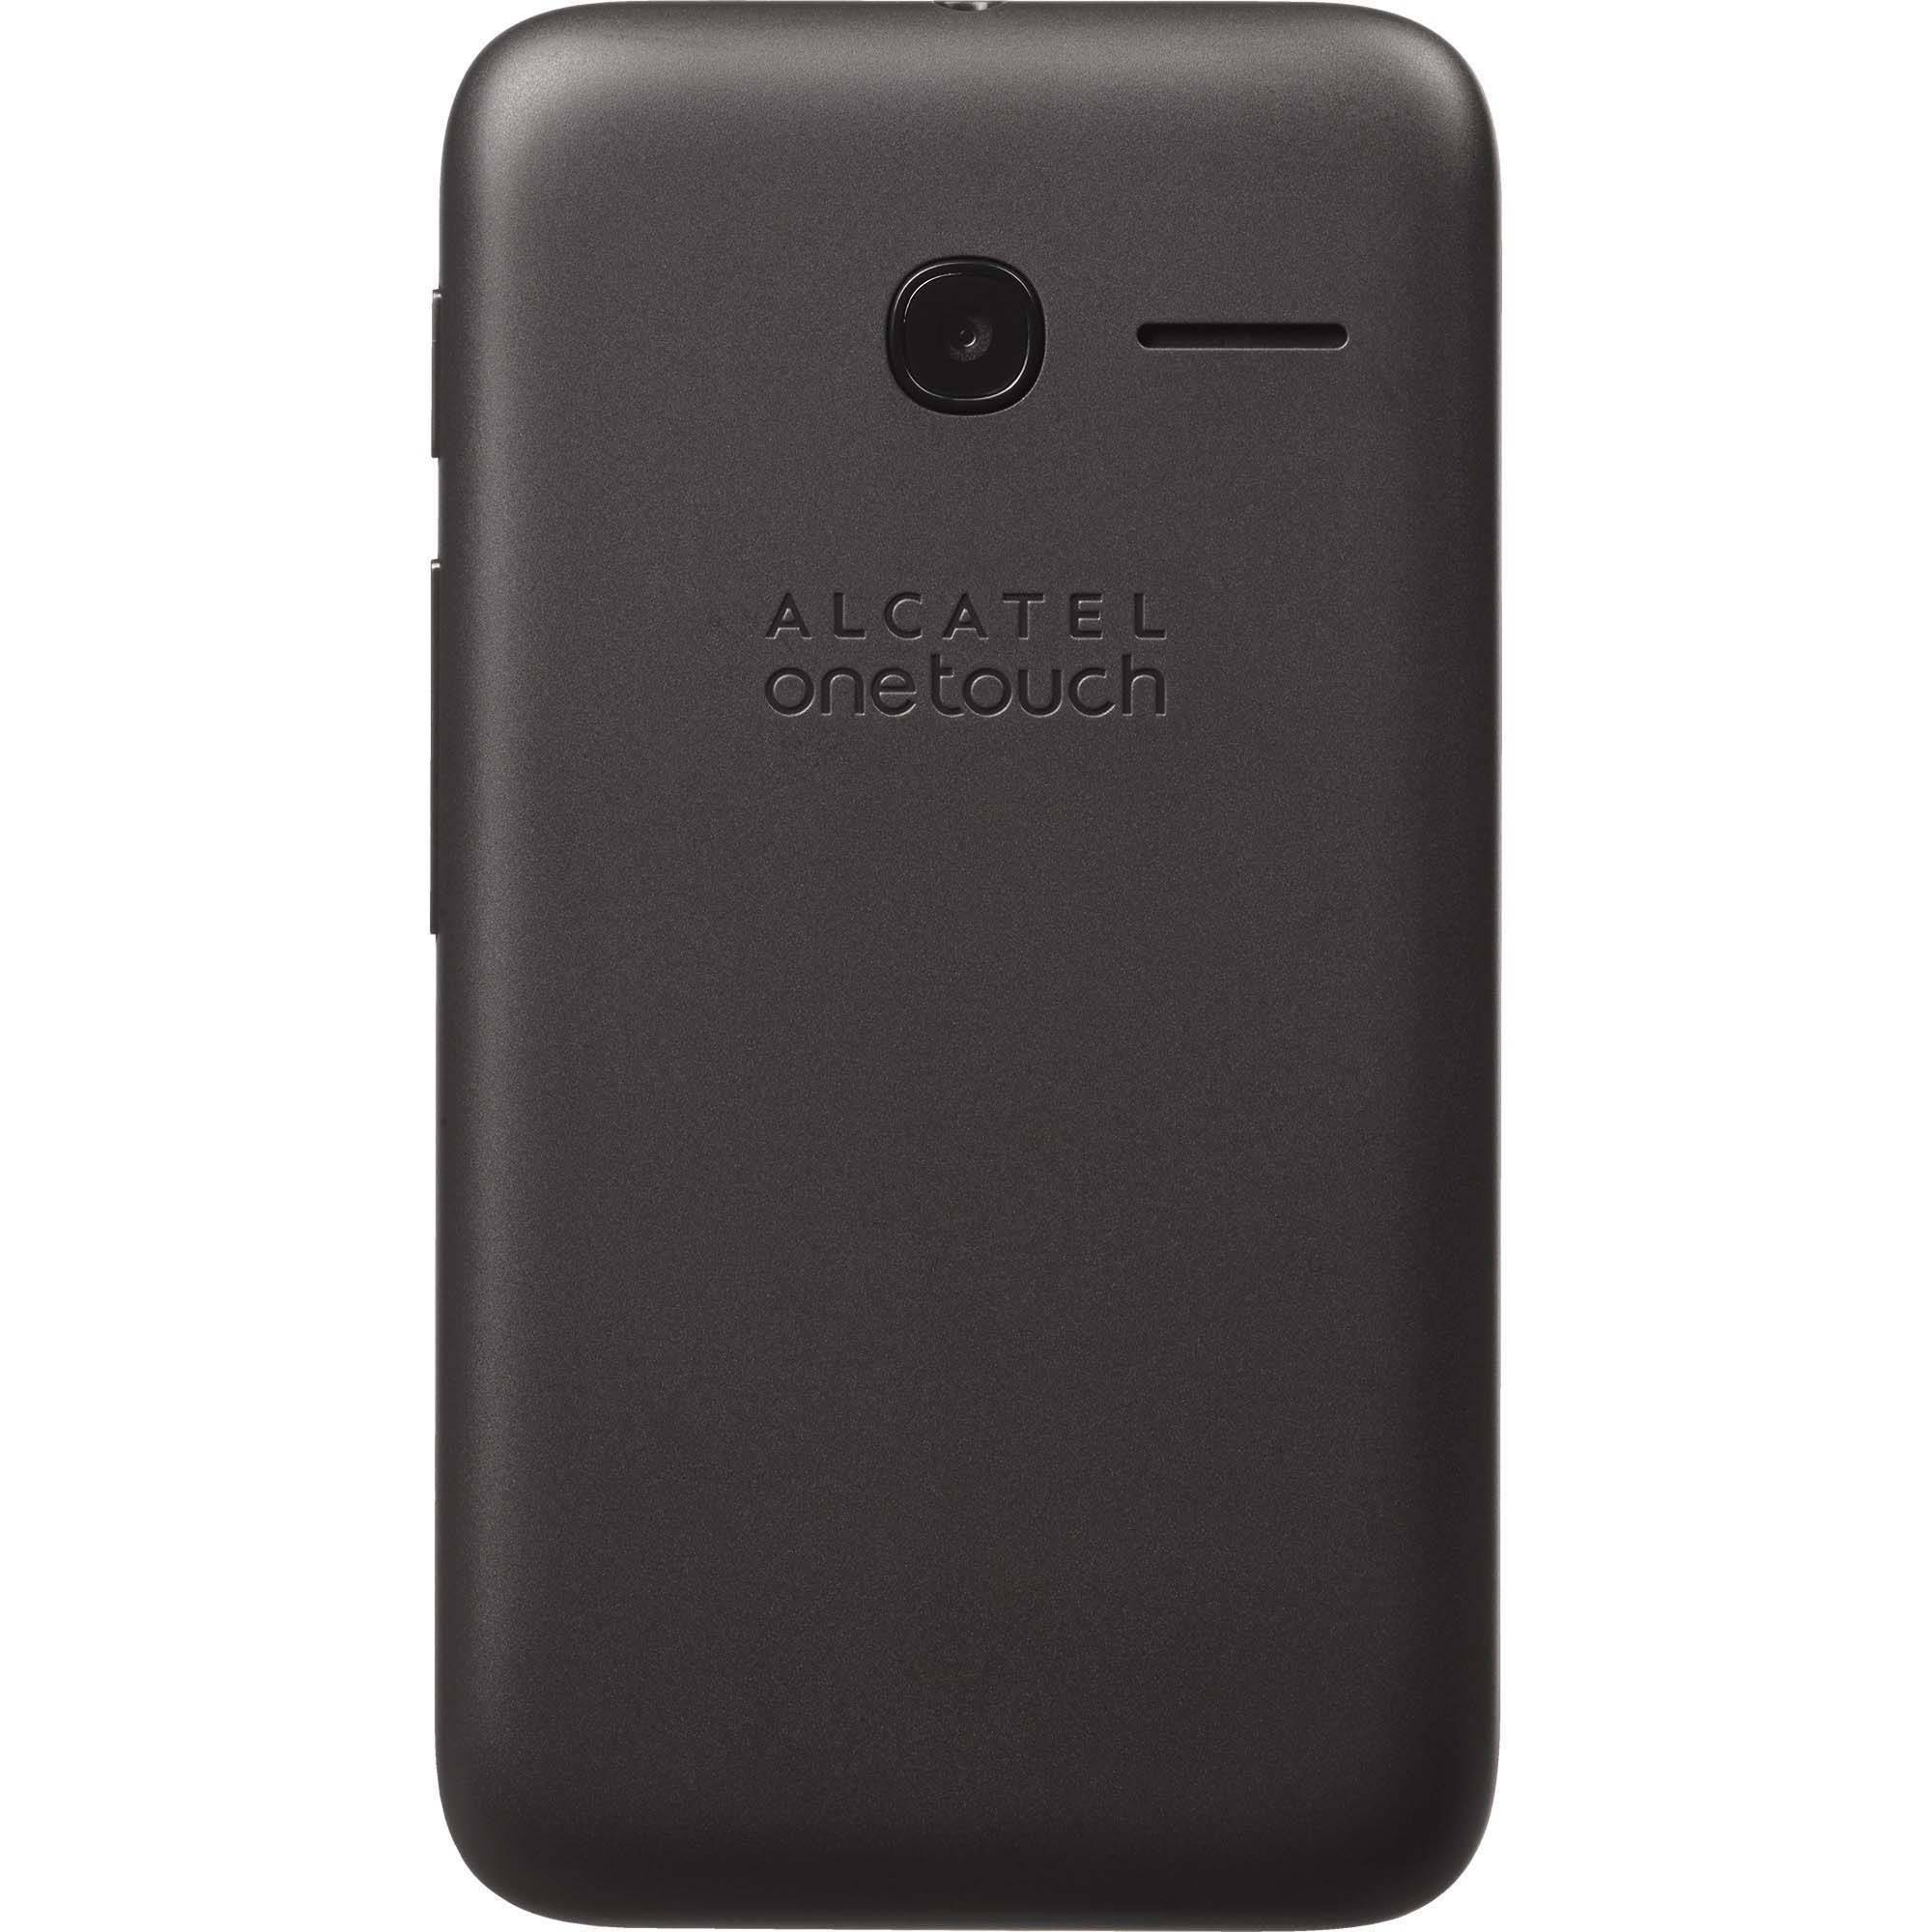 TracFone Alcatel Pixi Glitz Prepaid Smartphone, Black - image 3 of 6